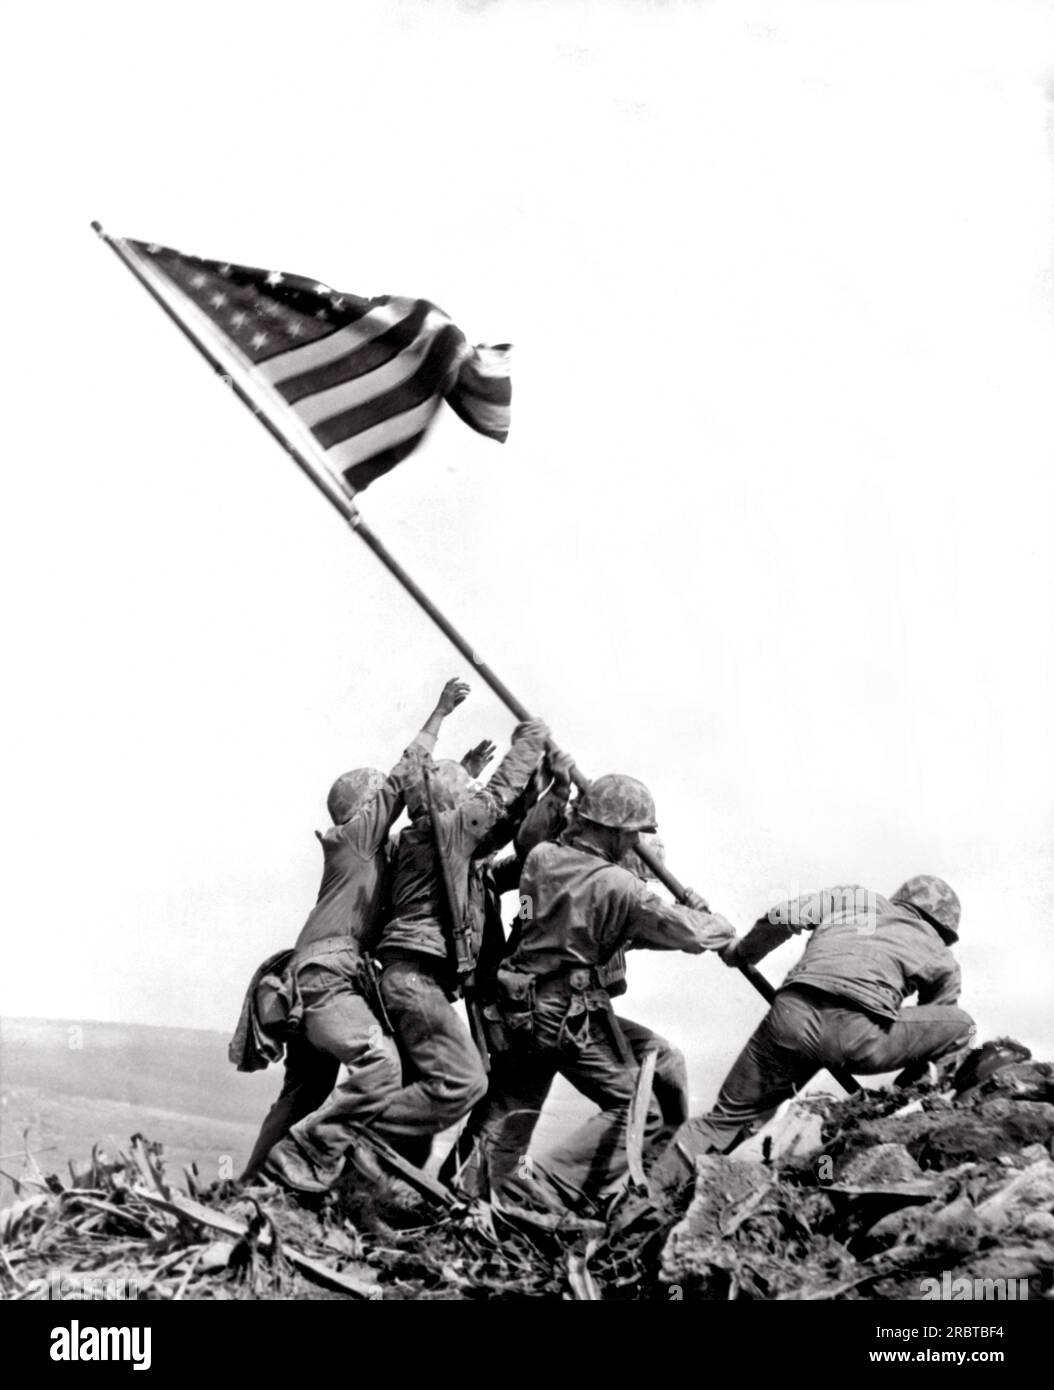 Iwo Jima, Japon : 23 février 1945. Joe Rosenthal "Flag Raising on Iwo Jima". Prise sur le mont Suribachi quatre jours après le débarquement des Marines, elle a remporté le prix Pulitzer. Banque D'Images